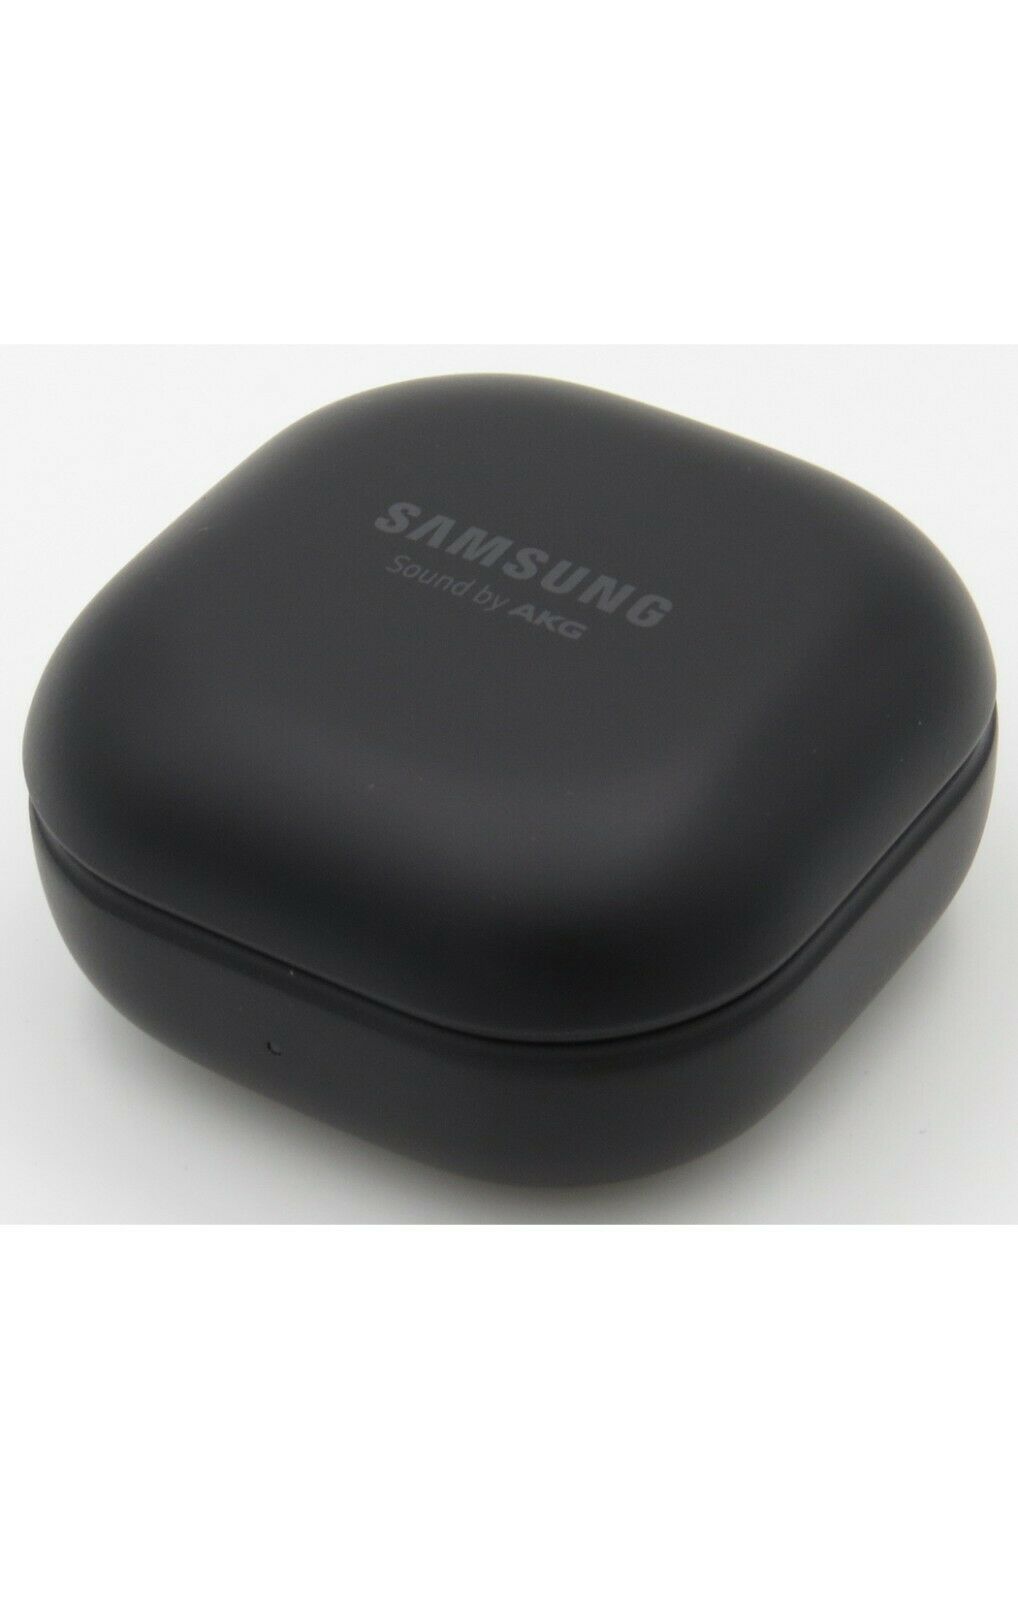 Samsung Galaxy Buds Pro R190 Wireless Bluetooth In-Ear Earbuds Phantom Black